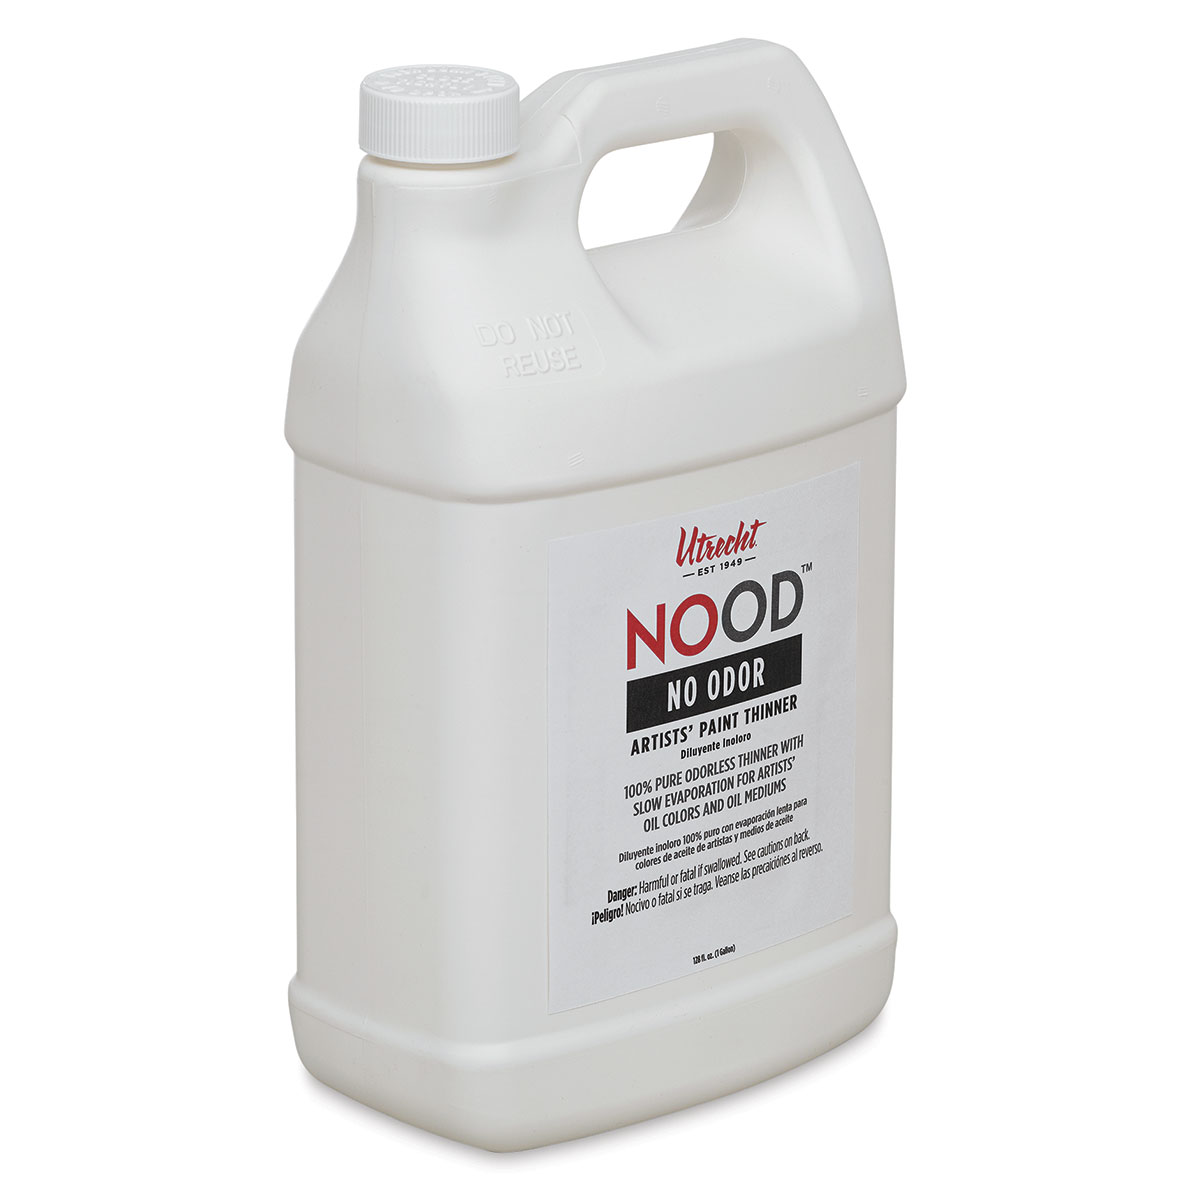 Utrecht Nood Odorless Paint Thinner - 3.8 L, Bottle